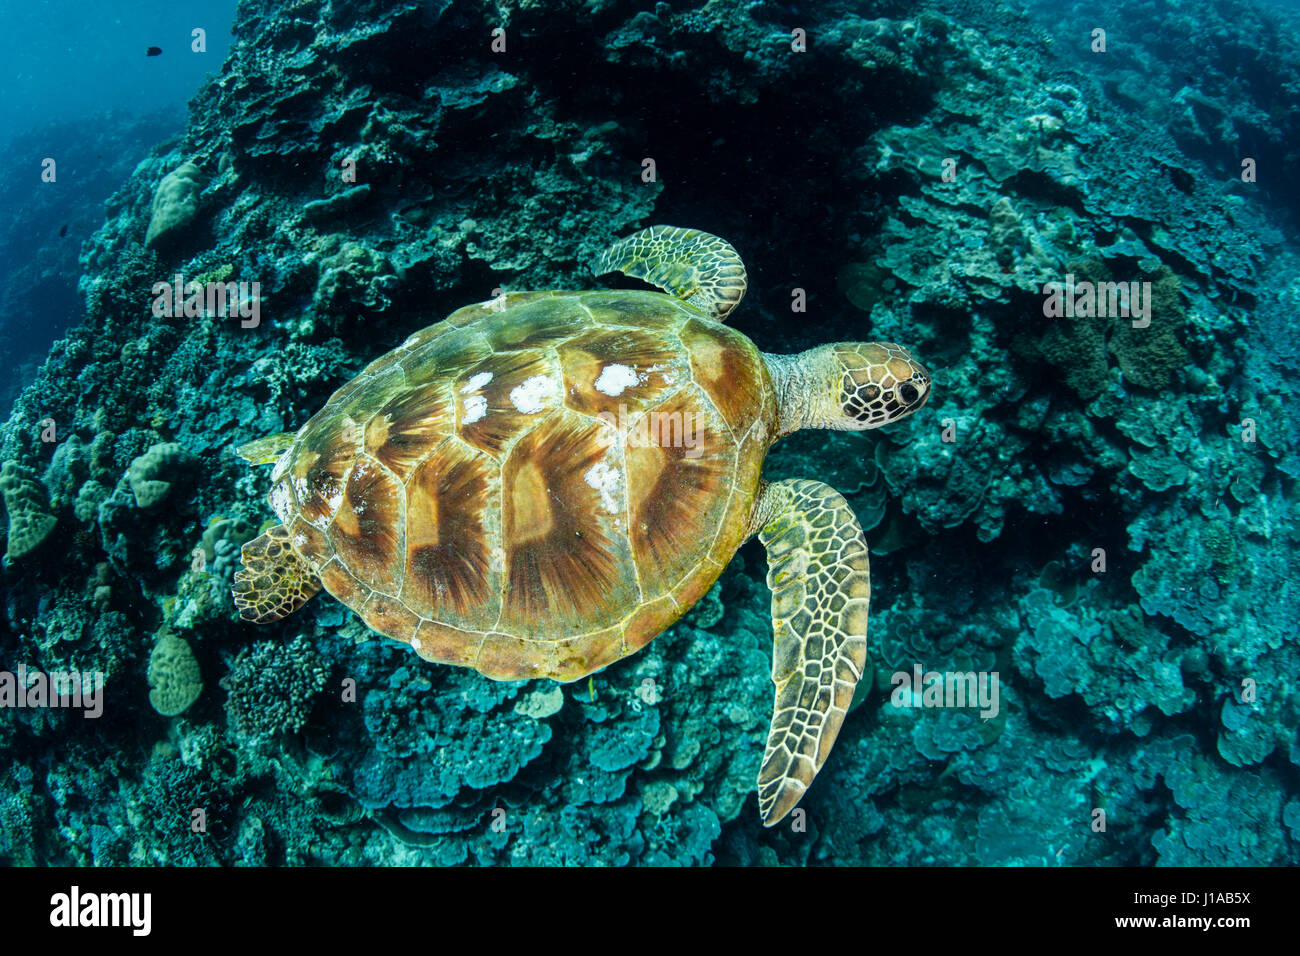 Une tortue de mer verte nage le long de la barrière de corail dans la République des Palaos. Ce pays tropical est une destination populaire pour les plongeurs. Banque D'Images